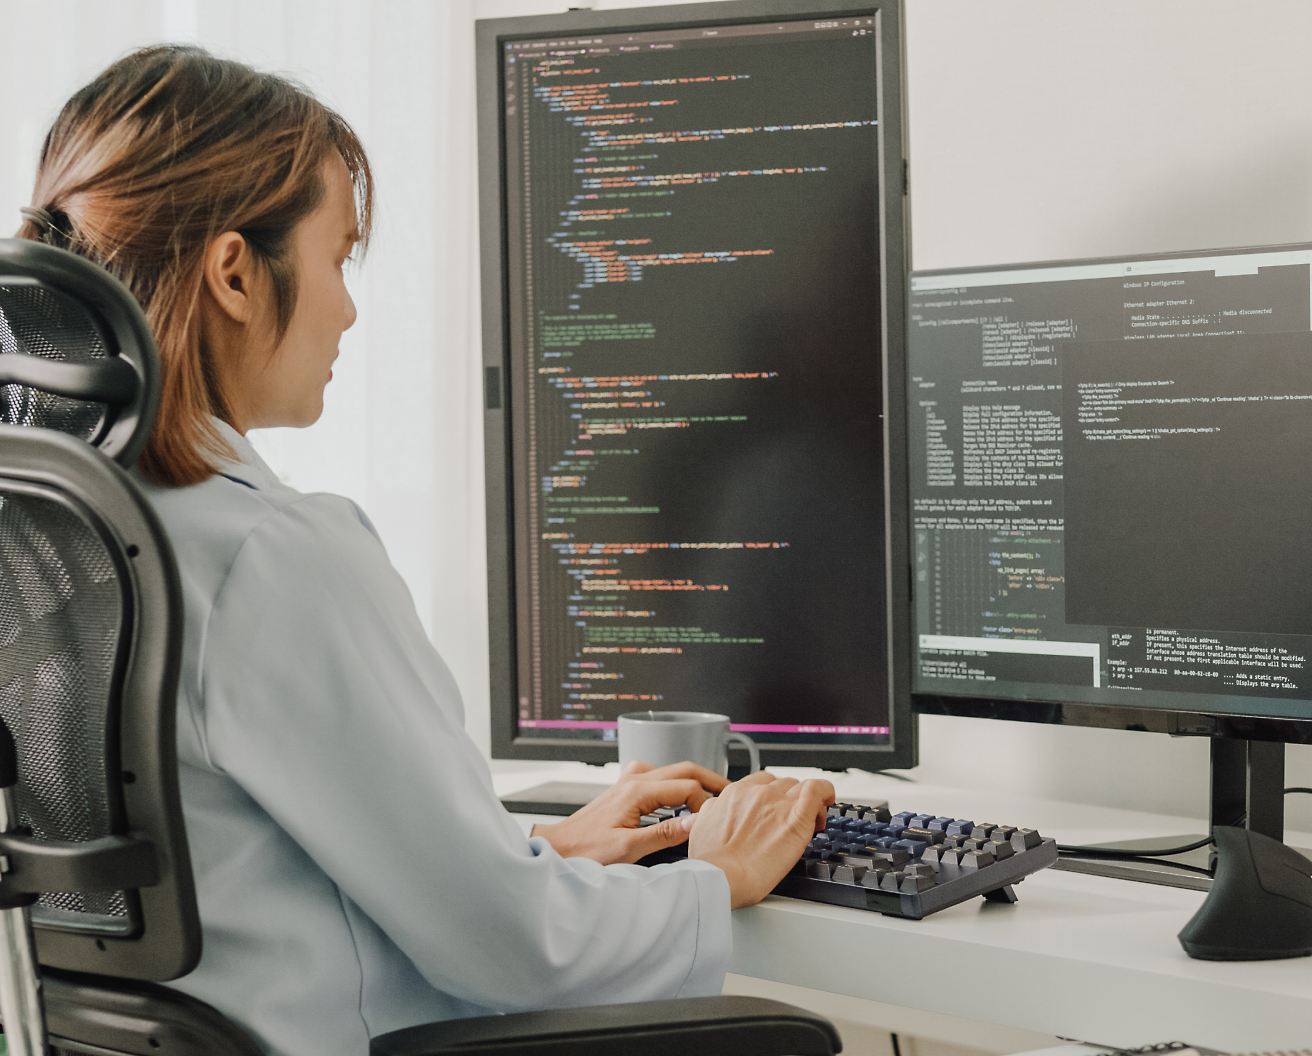 一位女士坐在办公椅上，在显示着程序代码的多个屏幕显示器上编写代码。